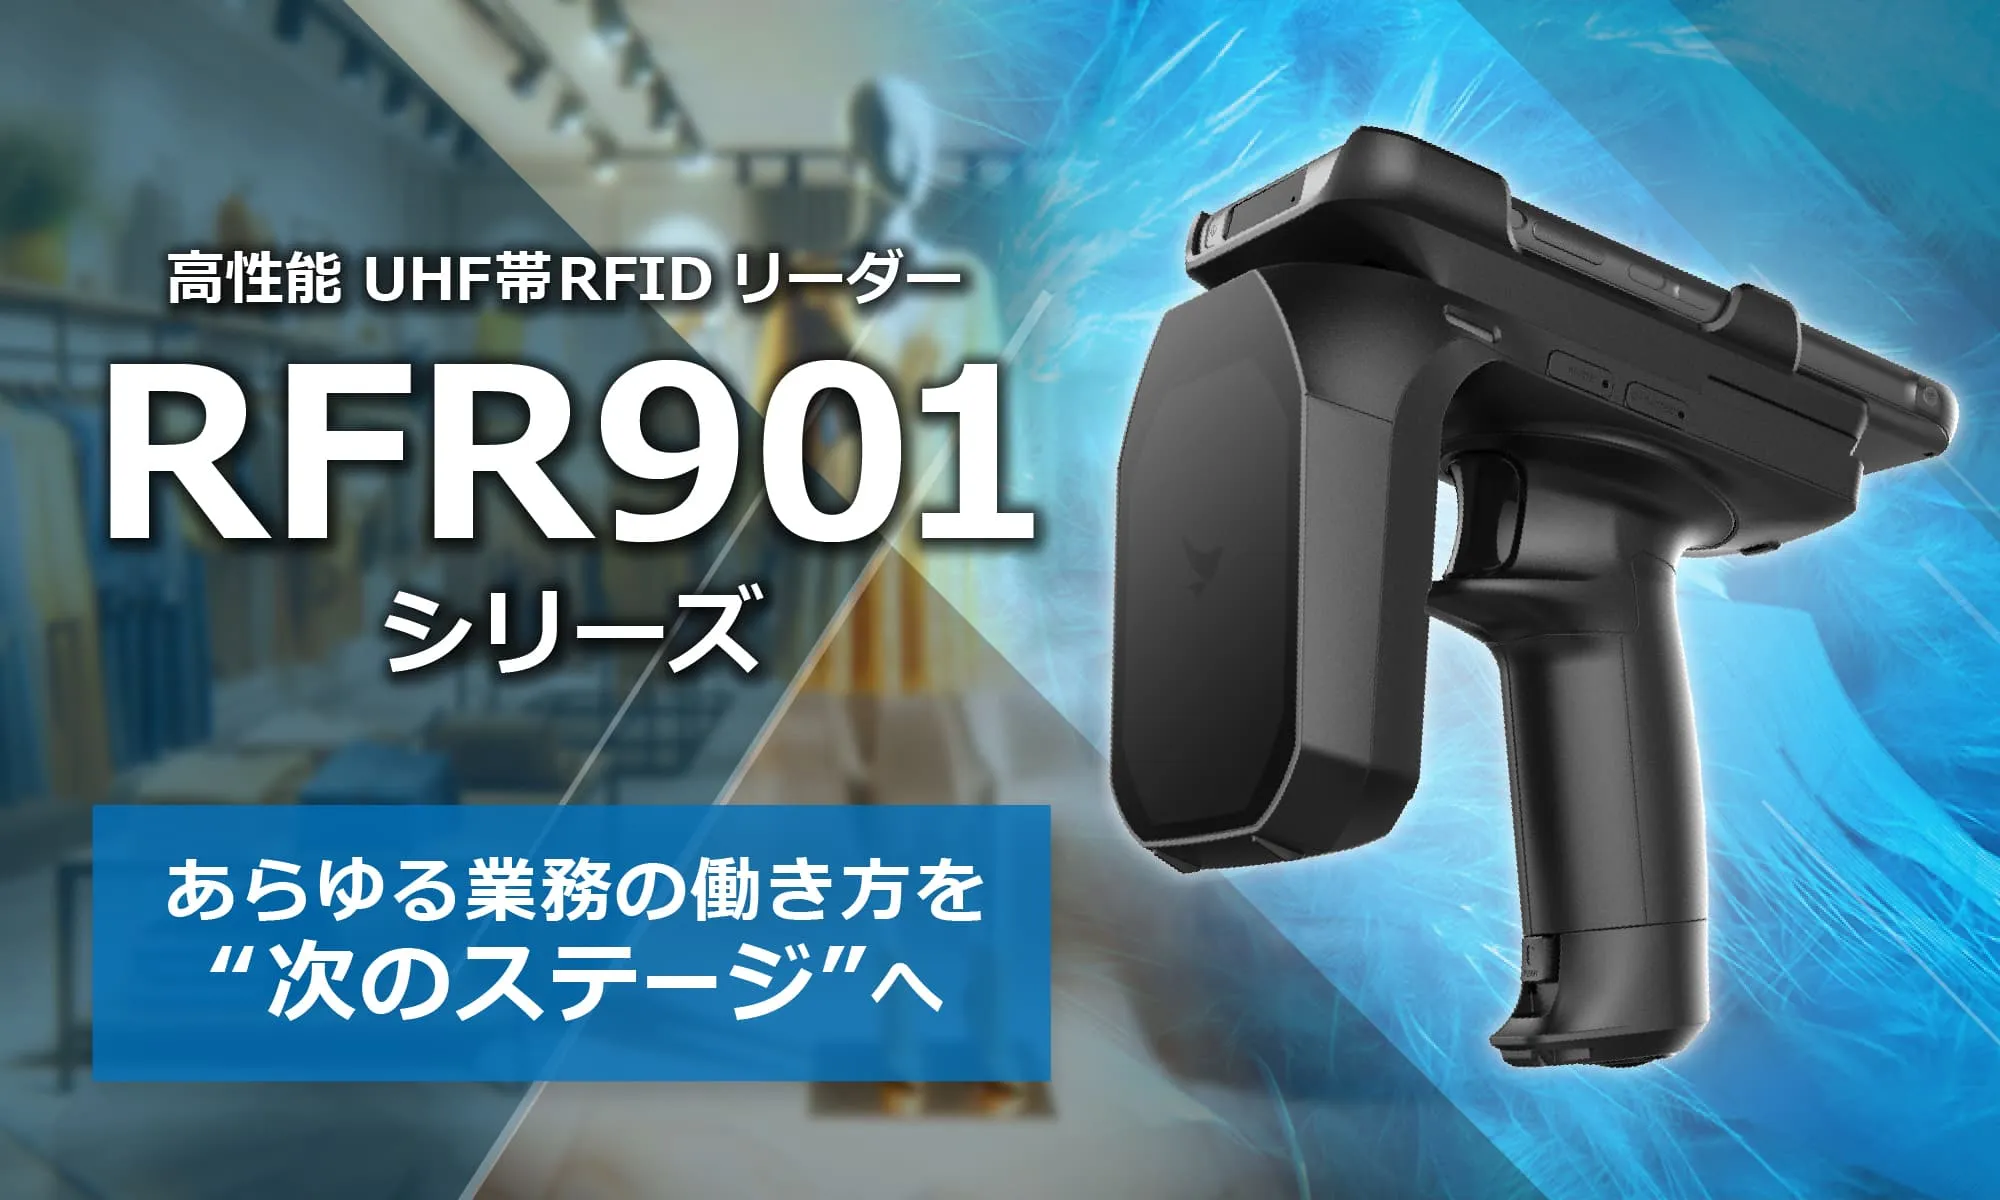 UHF帯RFIDリーダライタ「RFR901シリーズ」のページを公開しました